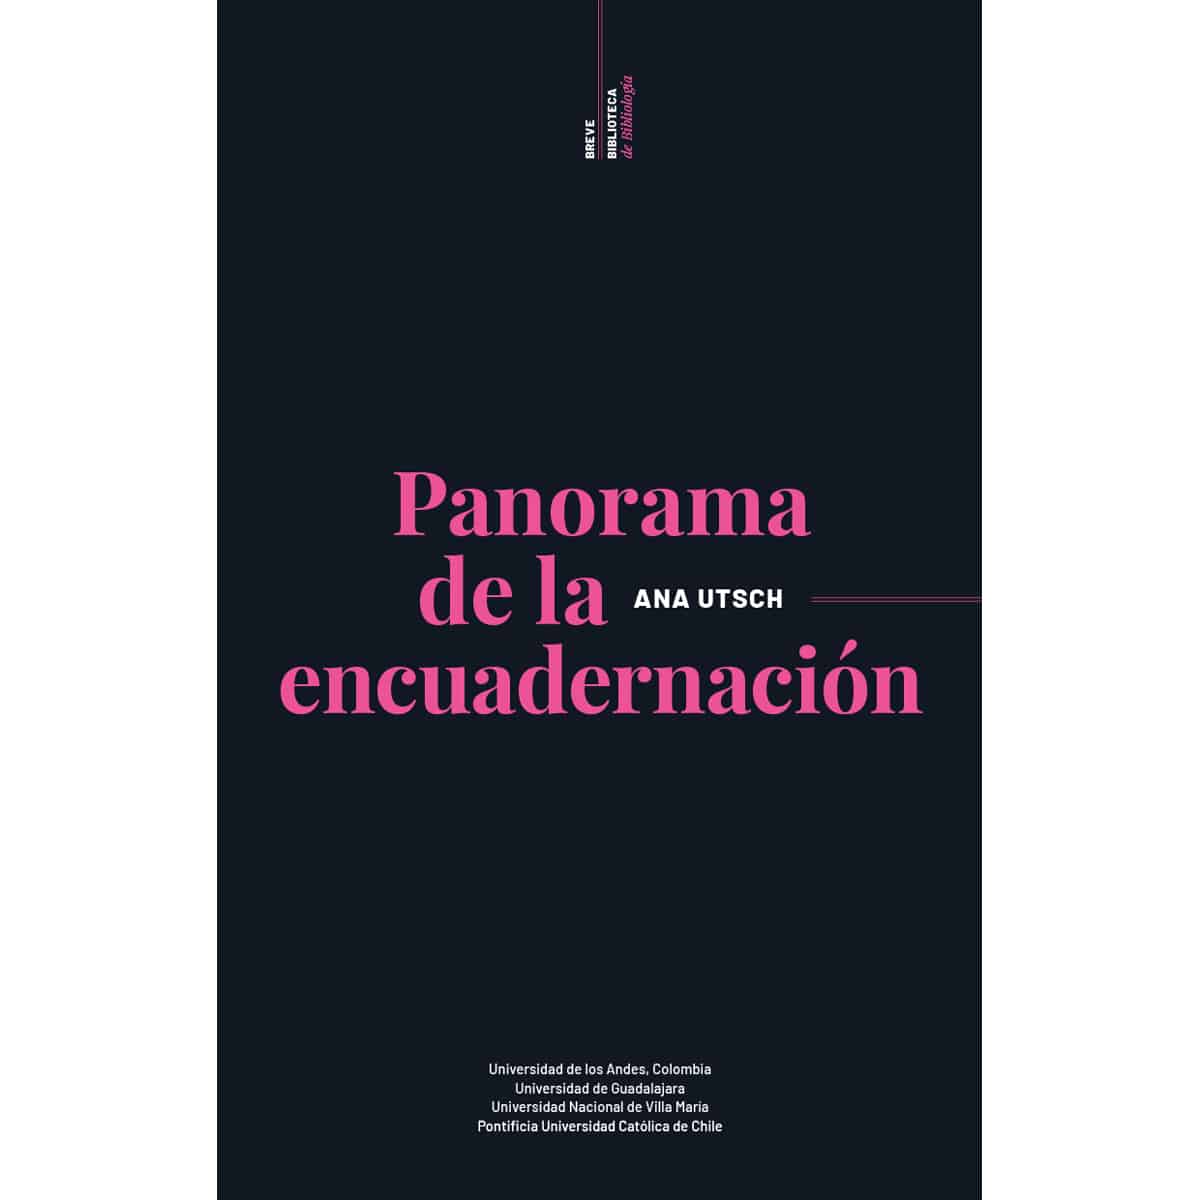 Cover image for Panoramas de la encuadernación